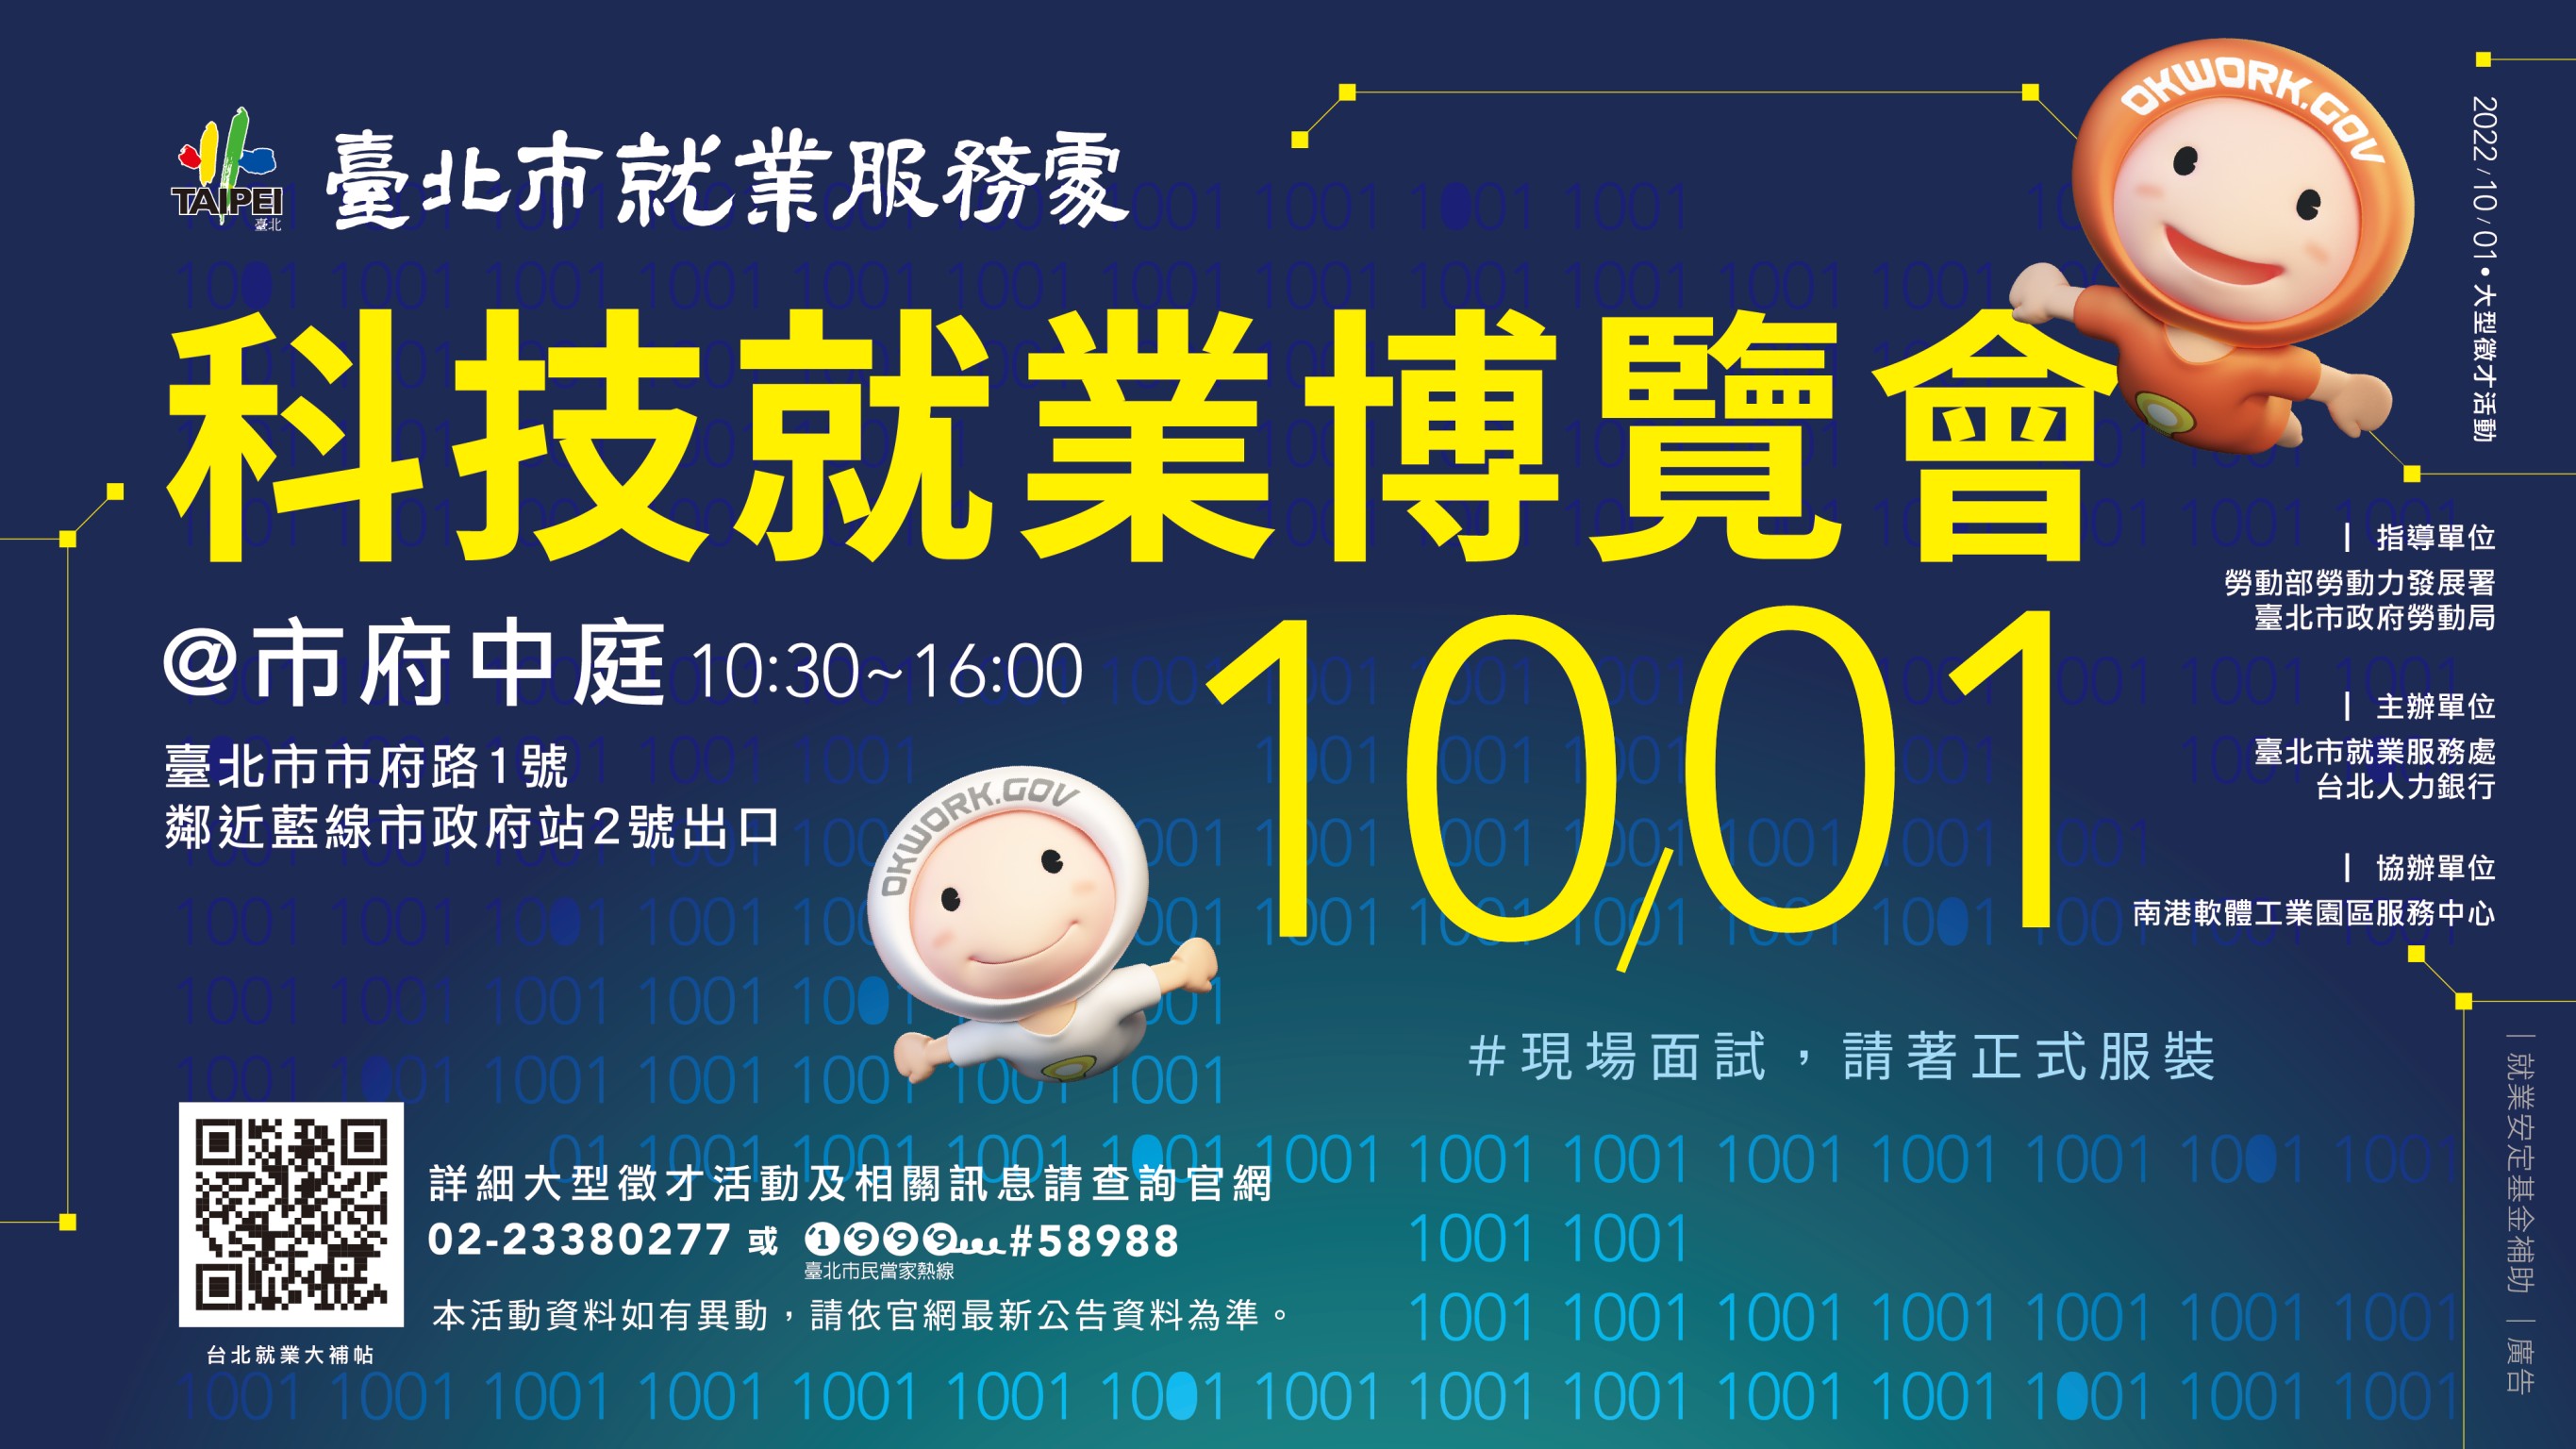 (轉知_就業博覽會)​​​​​​​臺北市就業服務處訂於111年10月1日辦理「科技就業博覽會」現場徵才活動